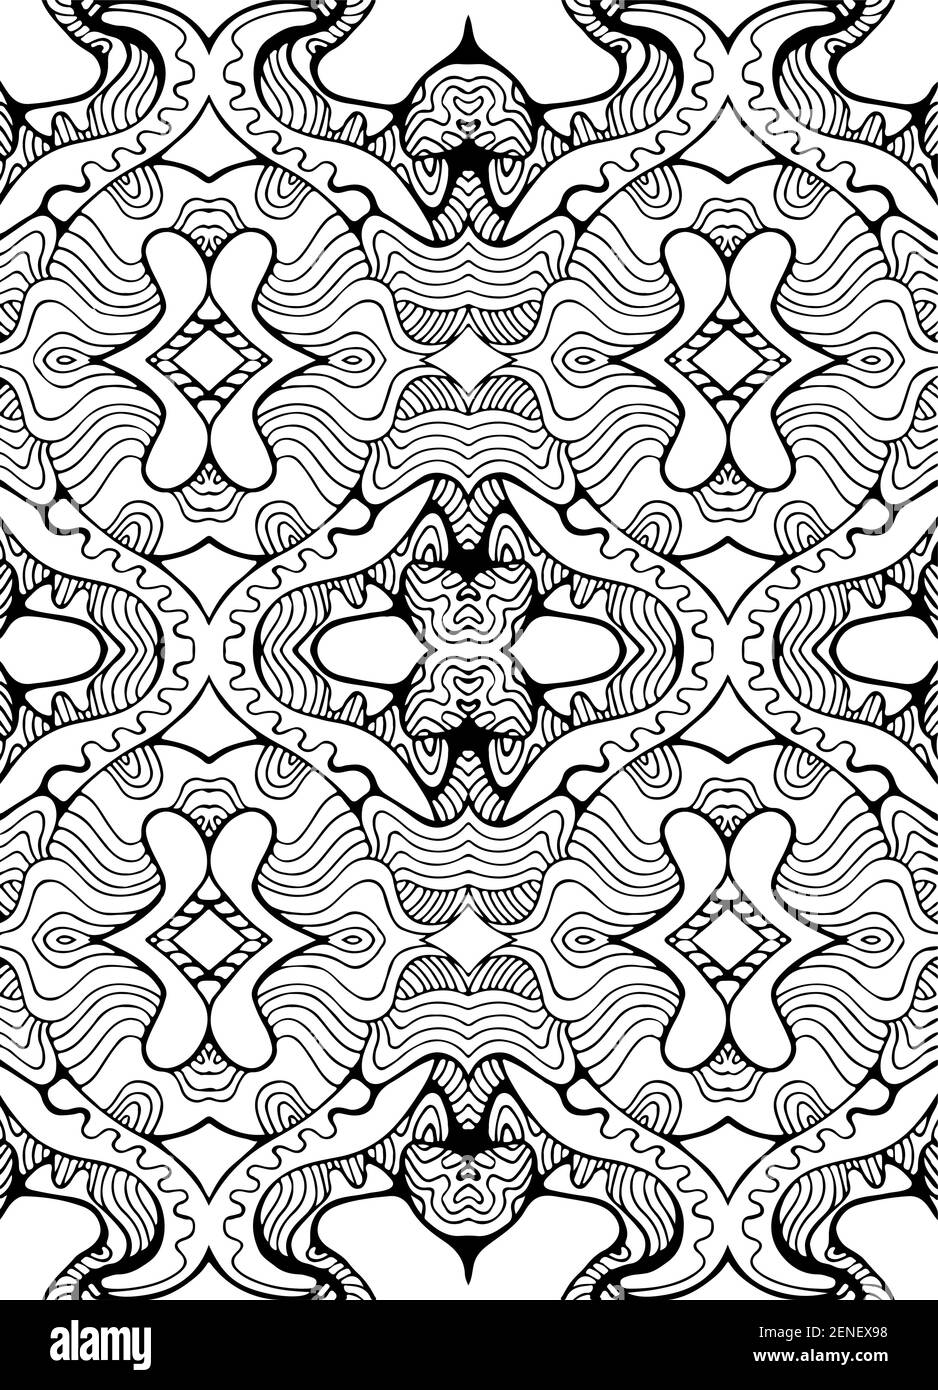 Ornement noir et blanc avec labyrinthe de motifs ligne, douille syle coloriage page. Carte psychédélique élégante. Illustration vectorielle. Trib surréaliste antistress Illustration de Vecteur